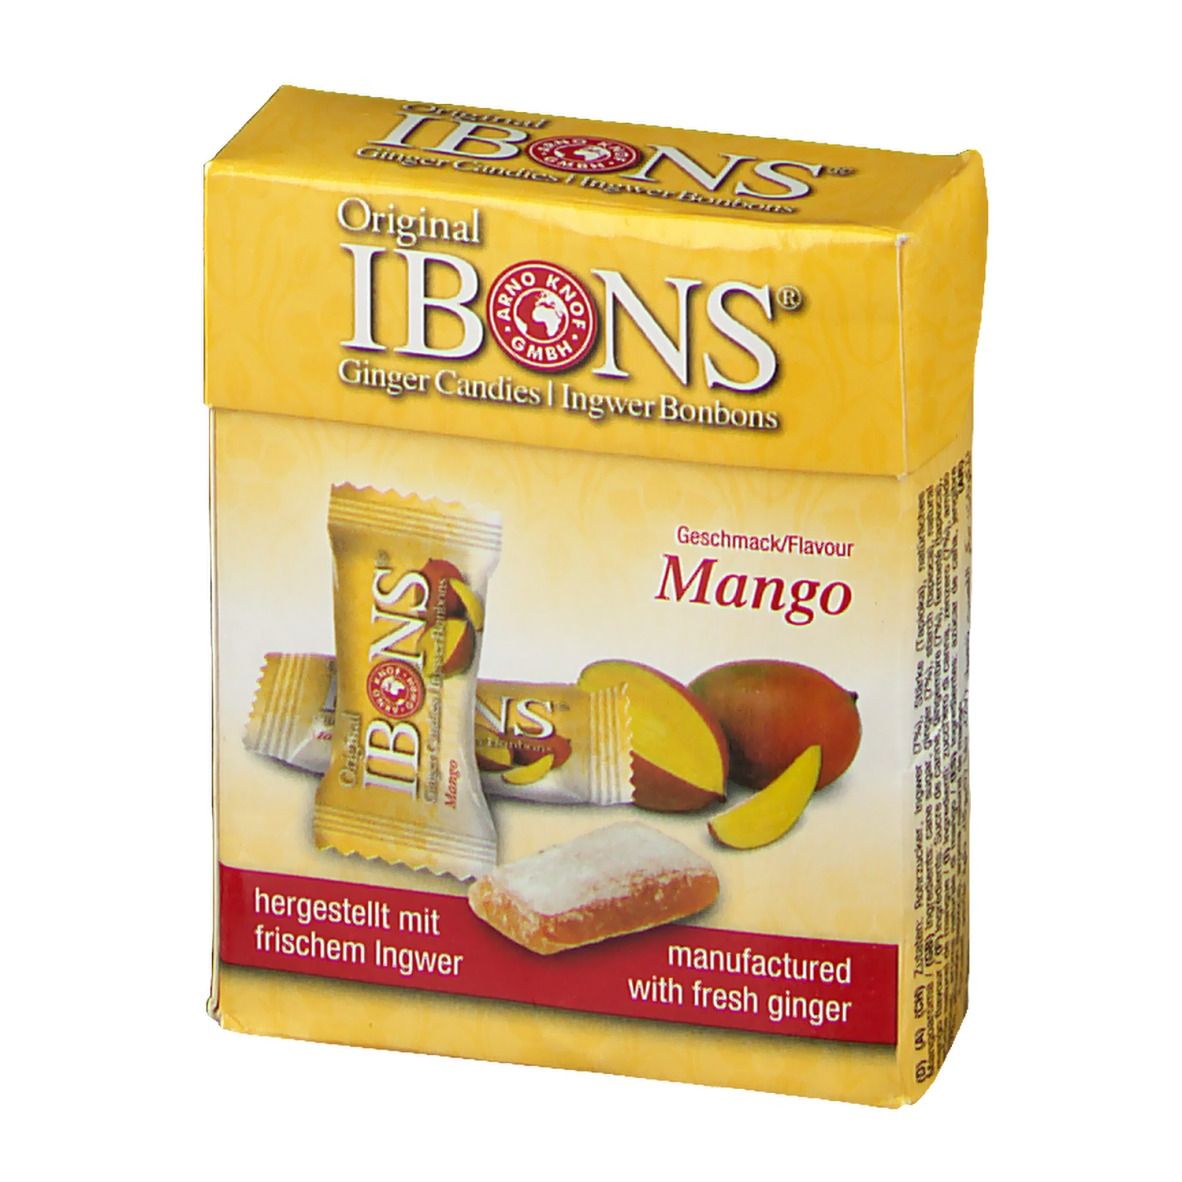 Original IBONS® Ingwer Bonbons Mango